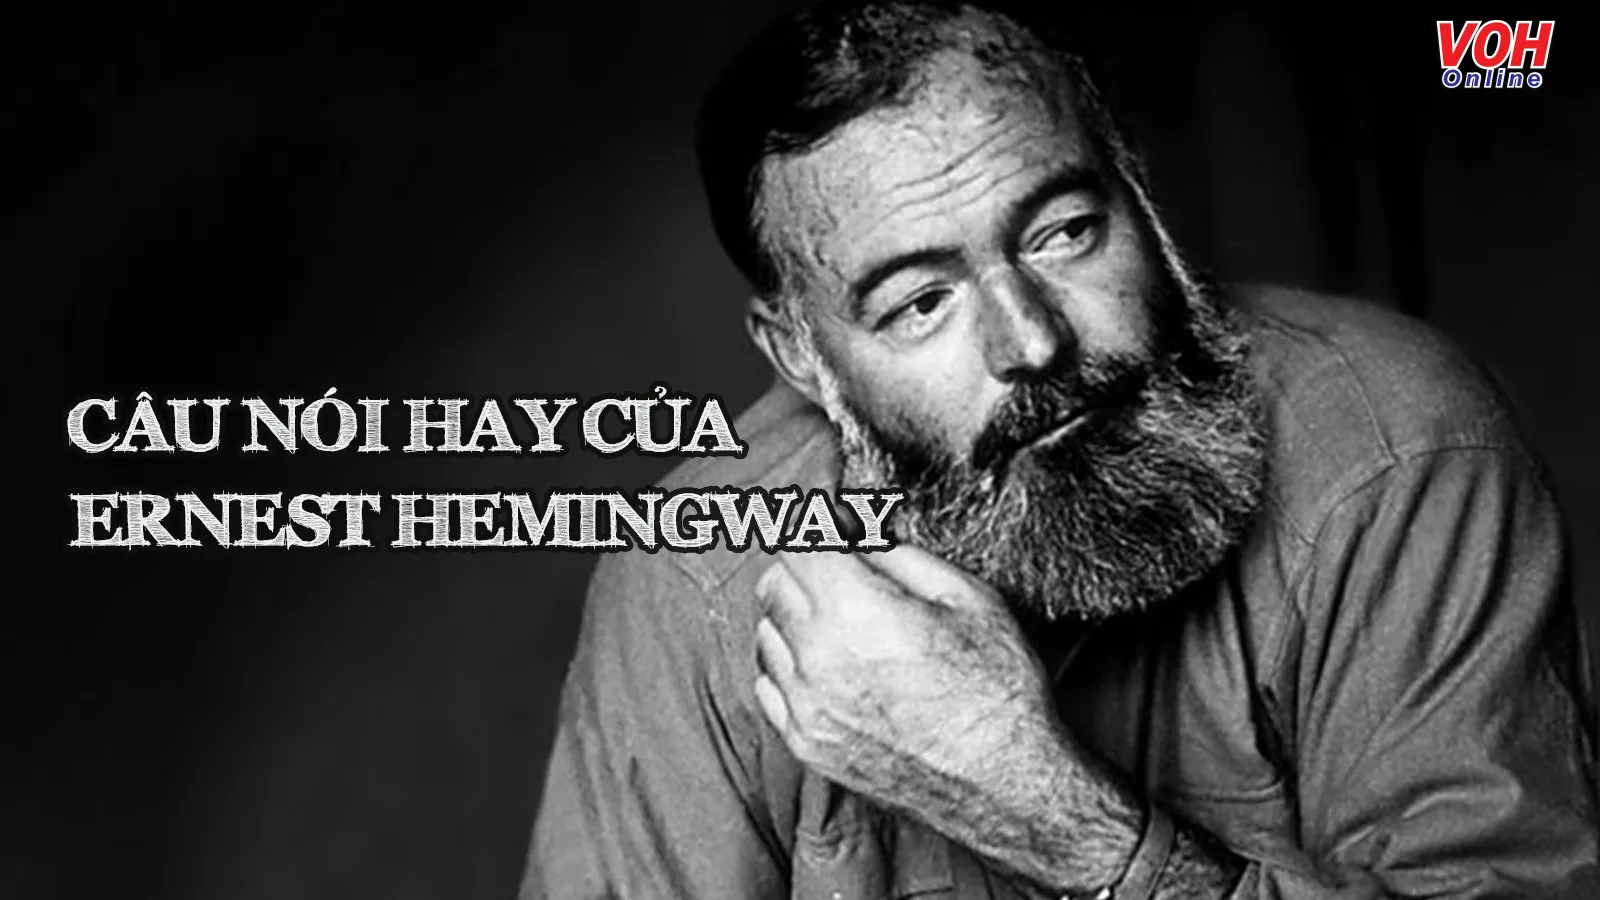 Ernest Hemingway là ai? 20 câu nói hay của nhà văn Mỹ nổi tiếng Ernest Hemingway